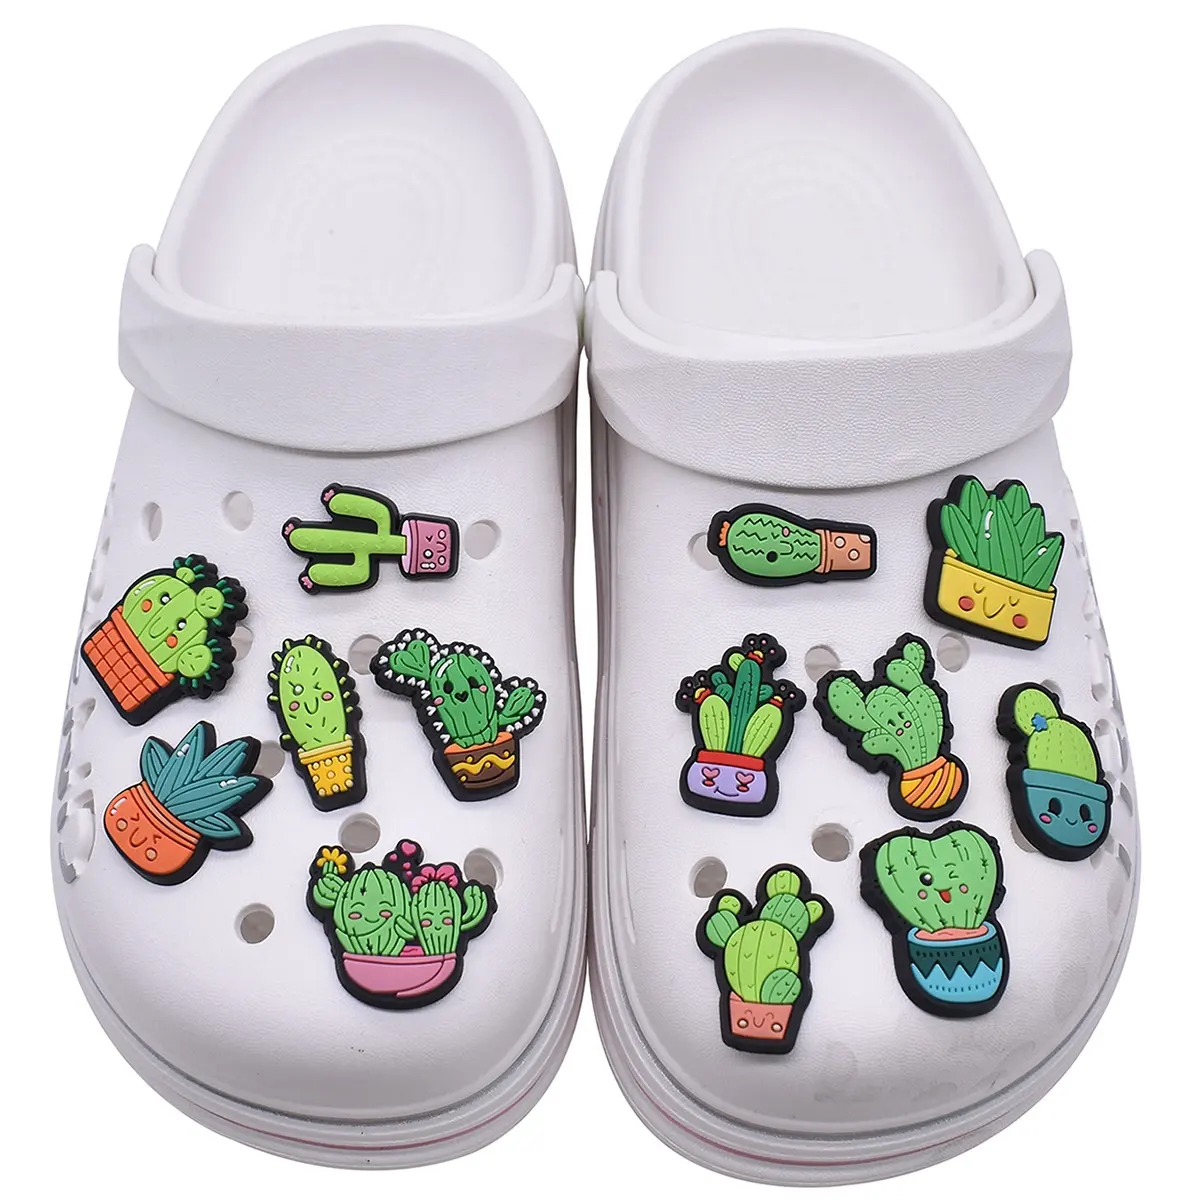 Nuovo Design personalizzato cartone animato Cactus scarpe decorazioni PVC scarpe accessori scarpe ciondoli scarpe